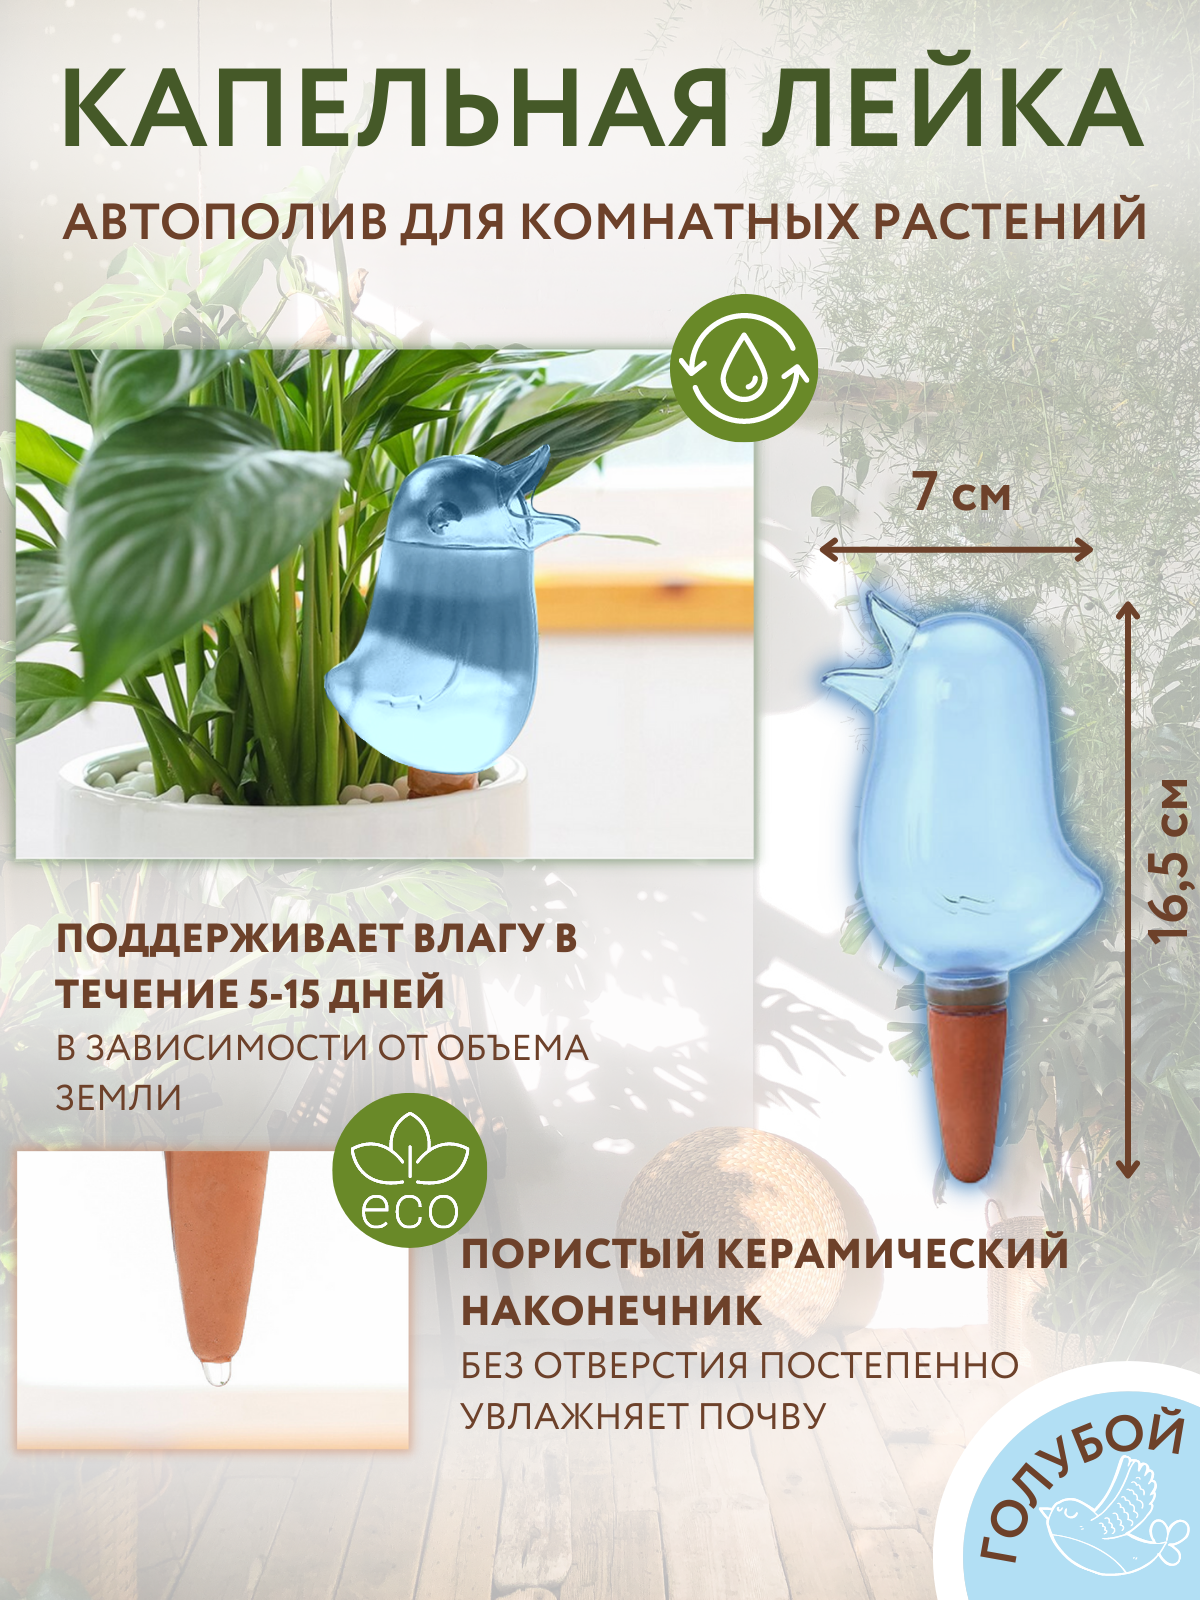 Система полива Автополив комнатных растений, капельный полив, птичка,  капельная лейка — купить в интернет-магазине по низкой цене на Яндекс  Маркете